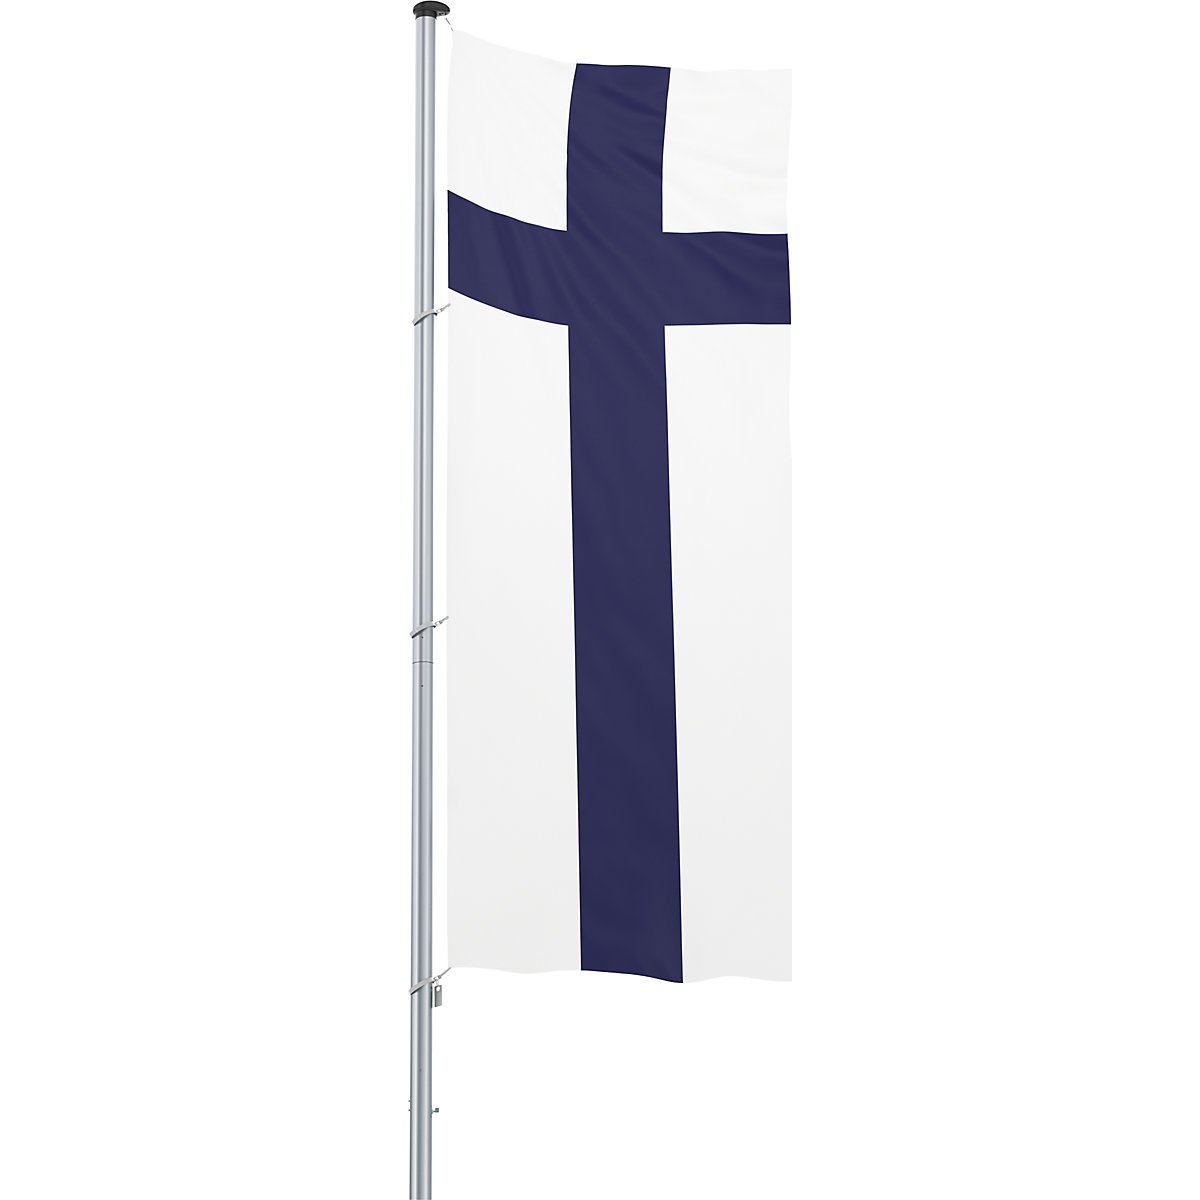 Mannus – Bandera para izar/bandera del país, formato 1,2 x 3 m, Finlandia